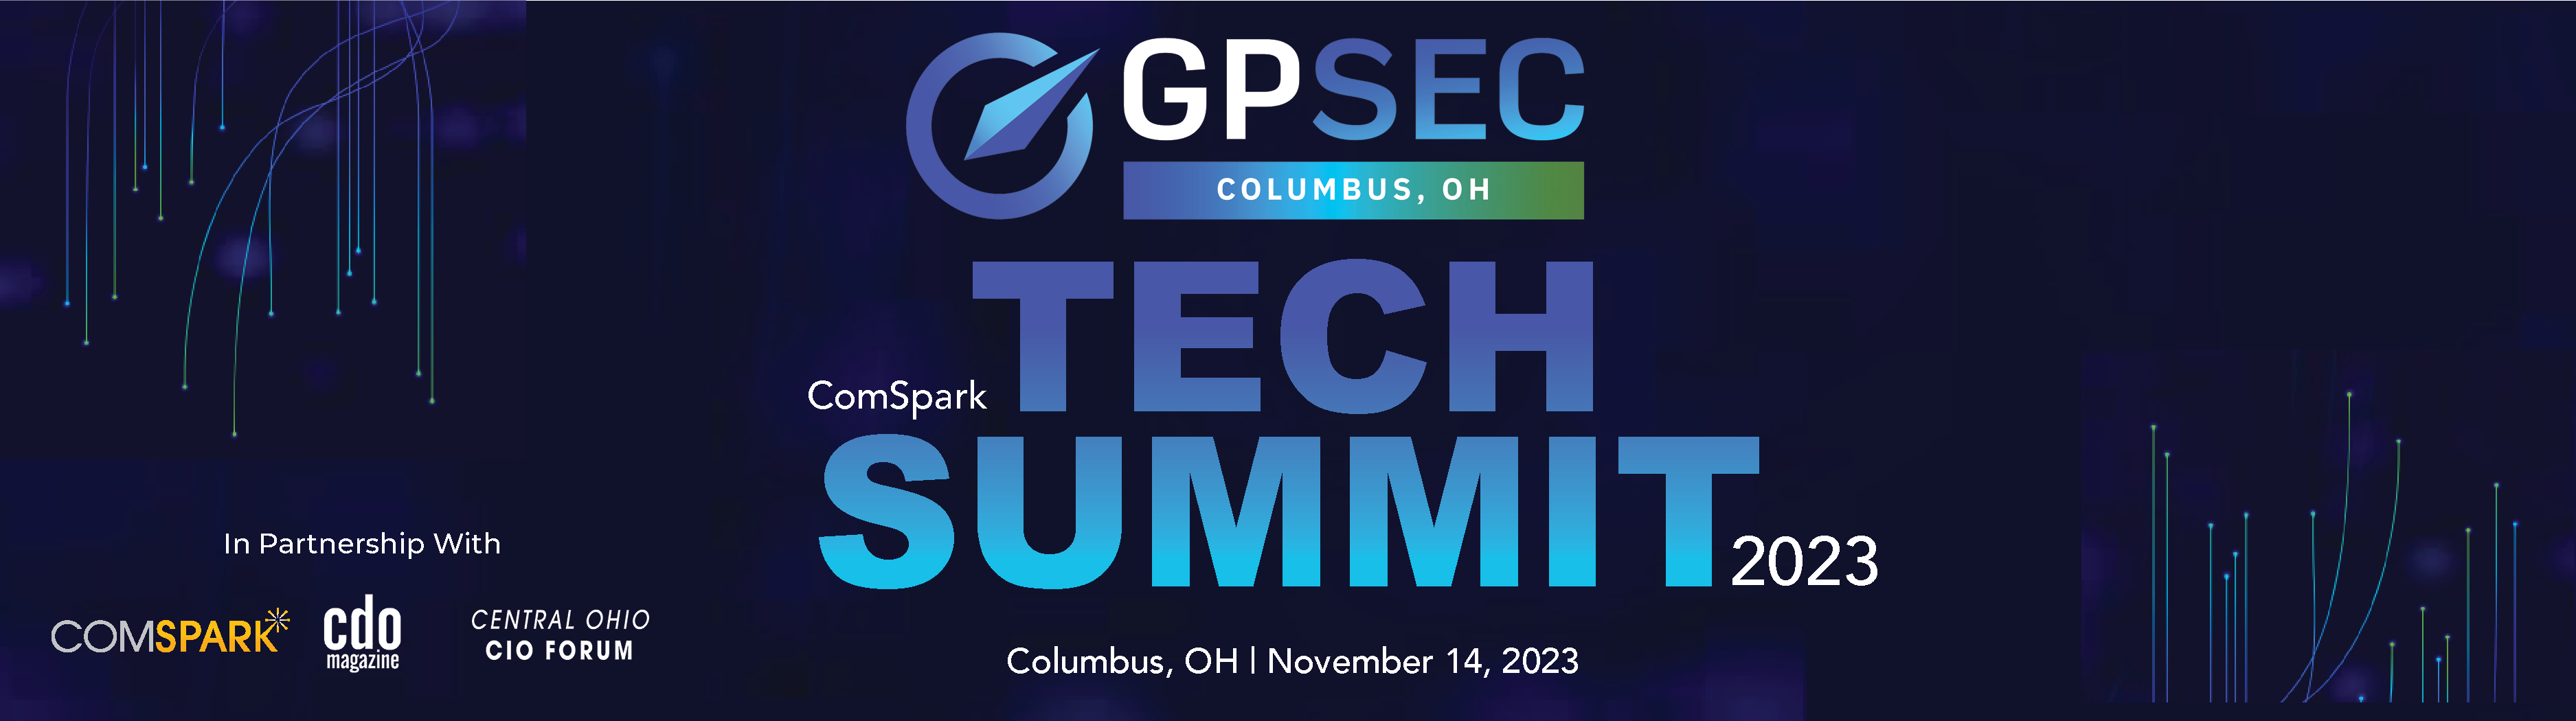 GPSec Columbus Tech Summit (1)